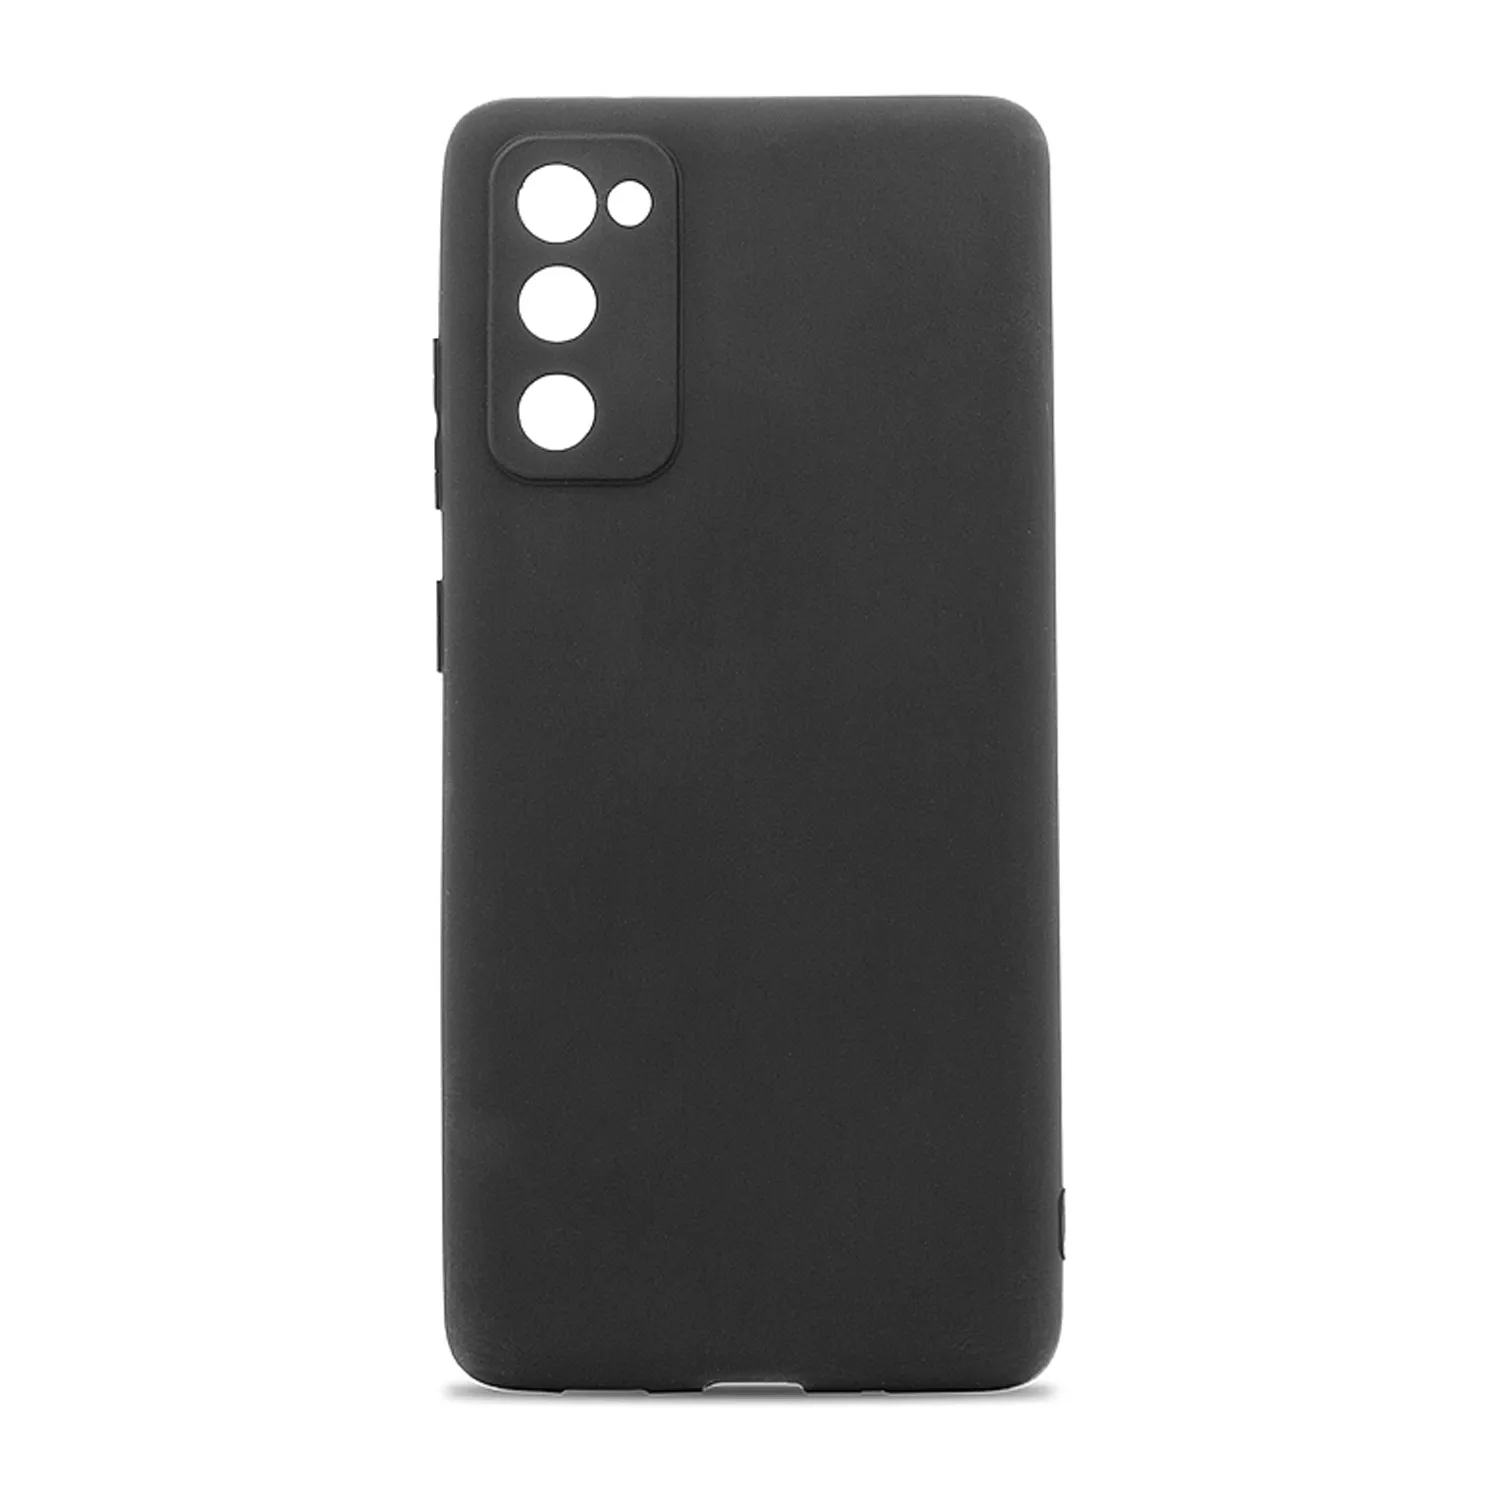 Cиликоновый чехол FASHION CASE Samsung Galaxy S20 Fe (черный)